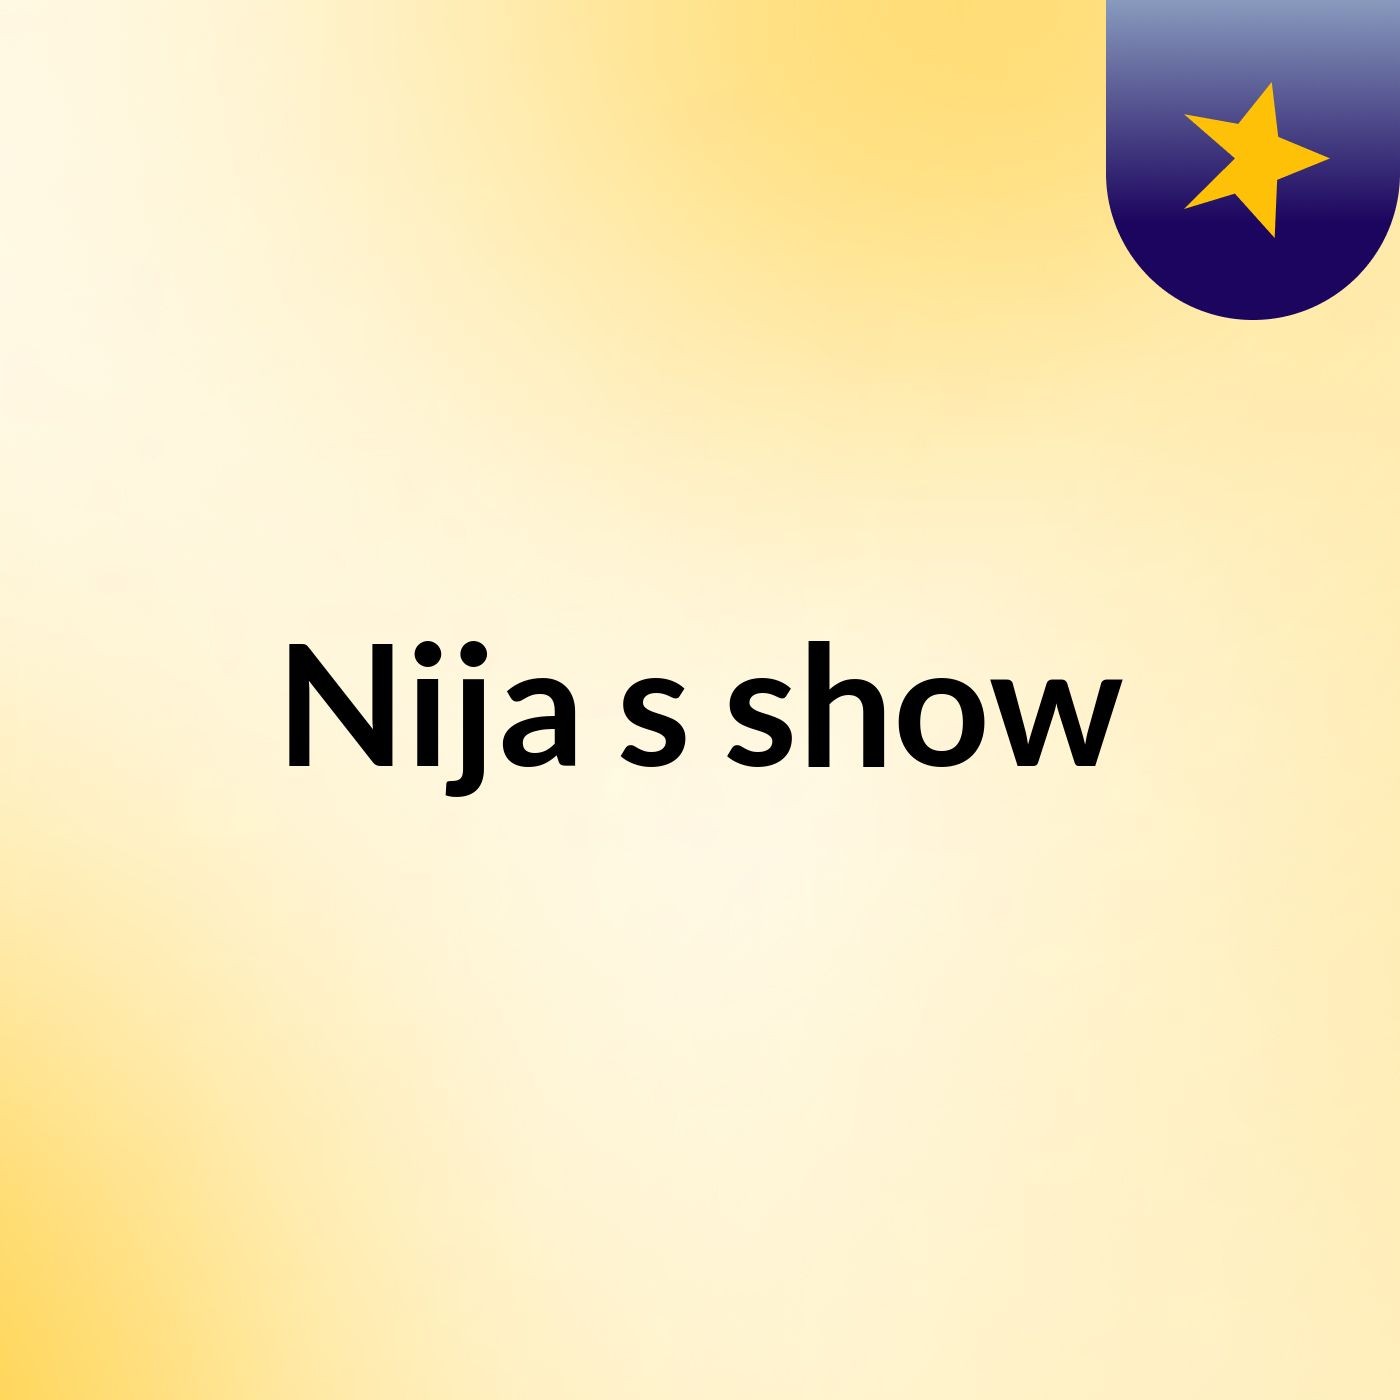 Nija's show